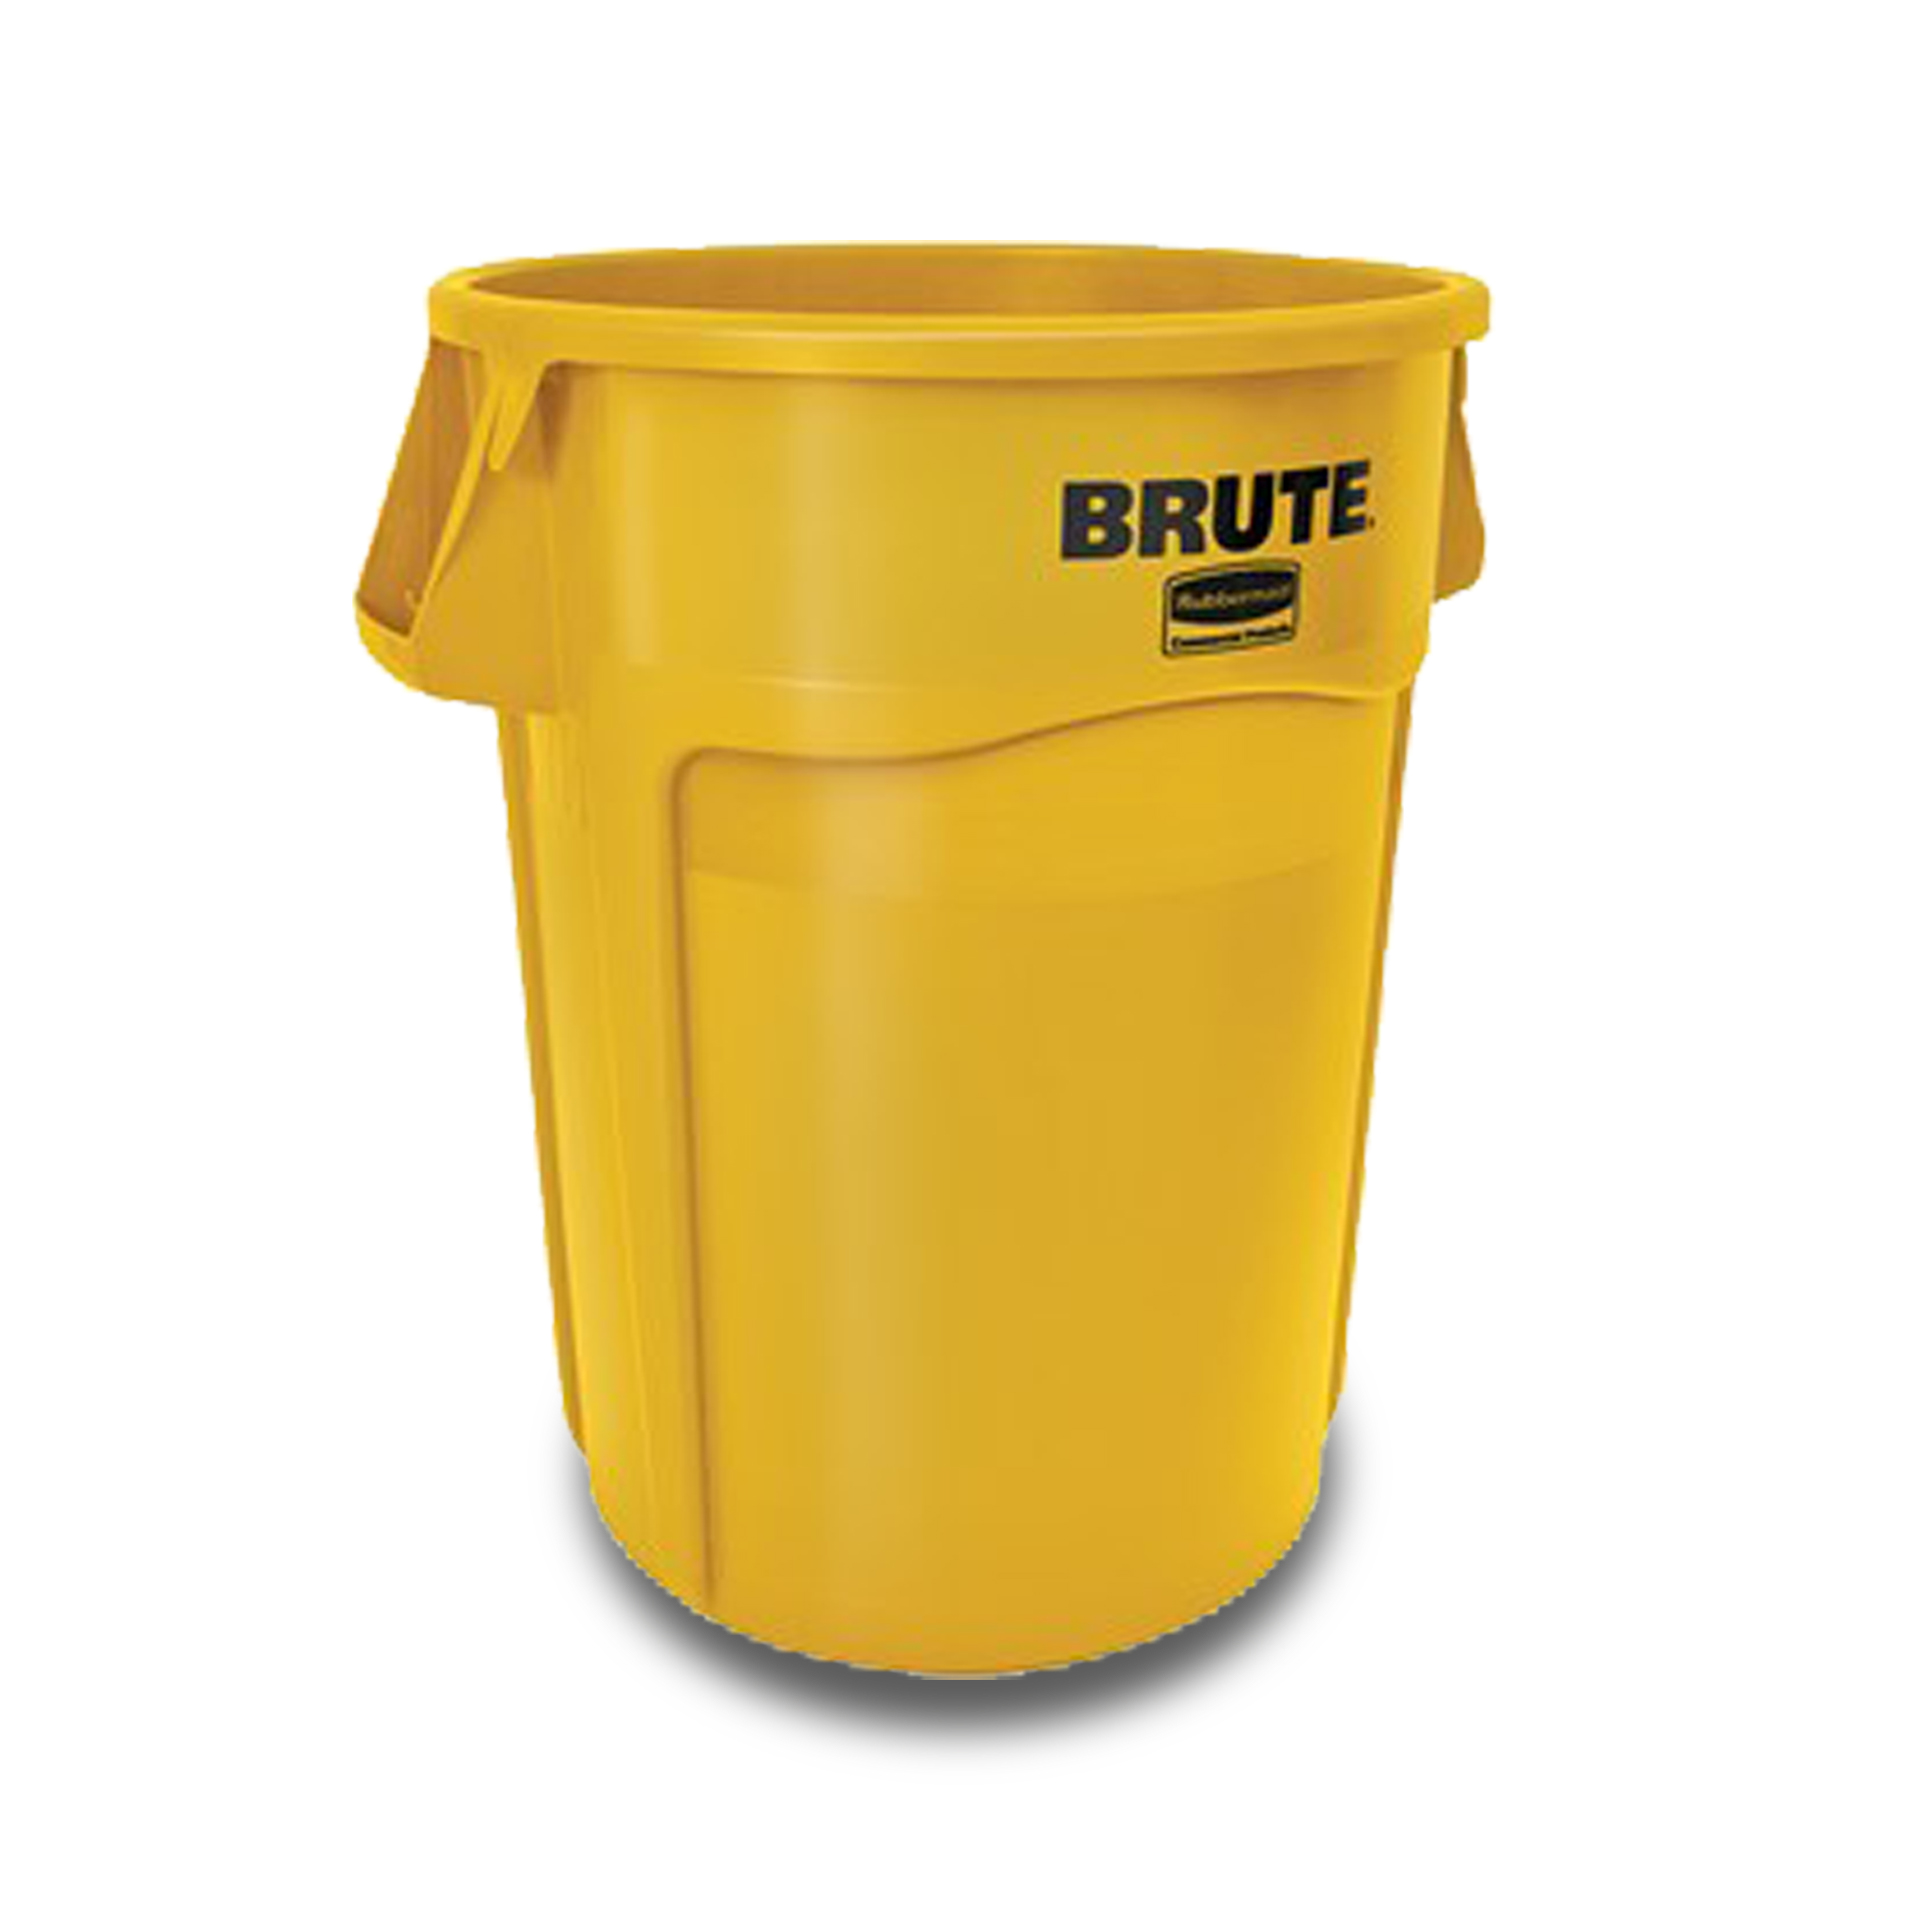 ถังอเนกประสงค์ ทรงกลม (ไม่รวมฝา) BRUTE™ ใส่อาหารได้ 37.9 ลิตร สีเหลือง